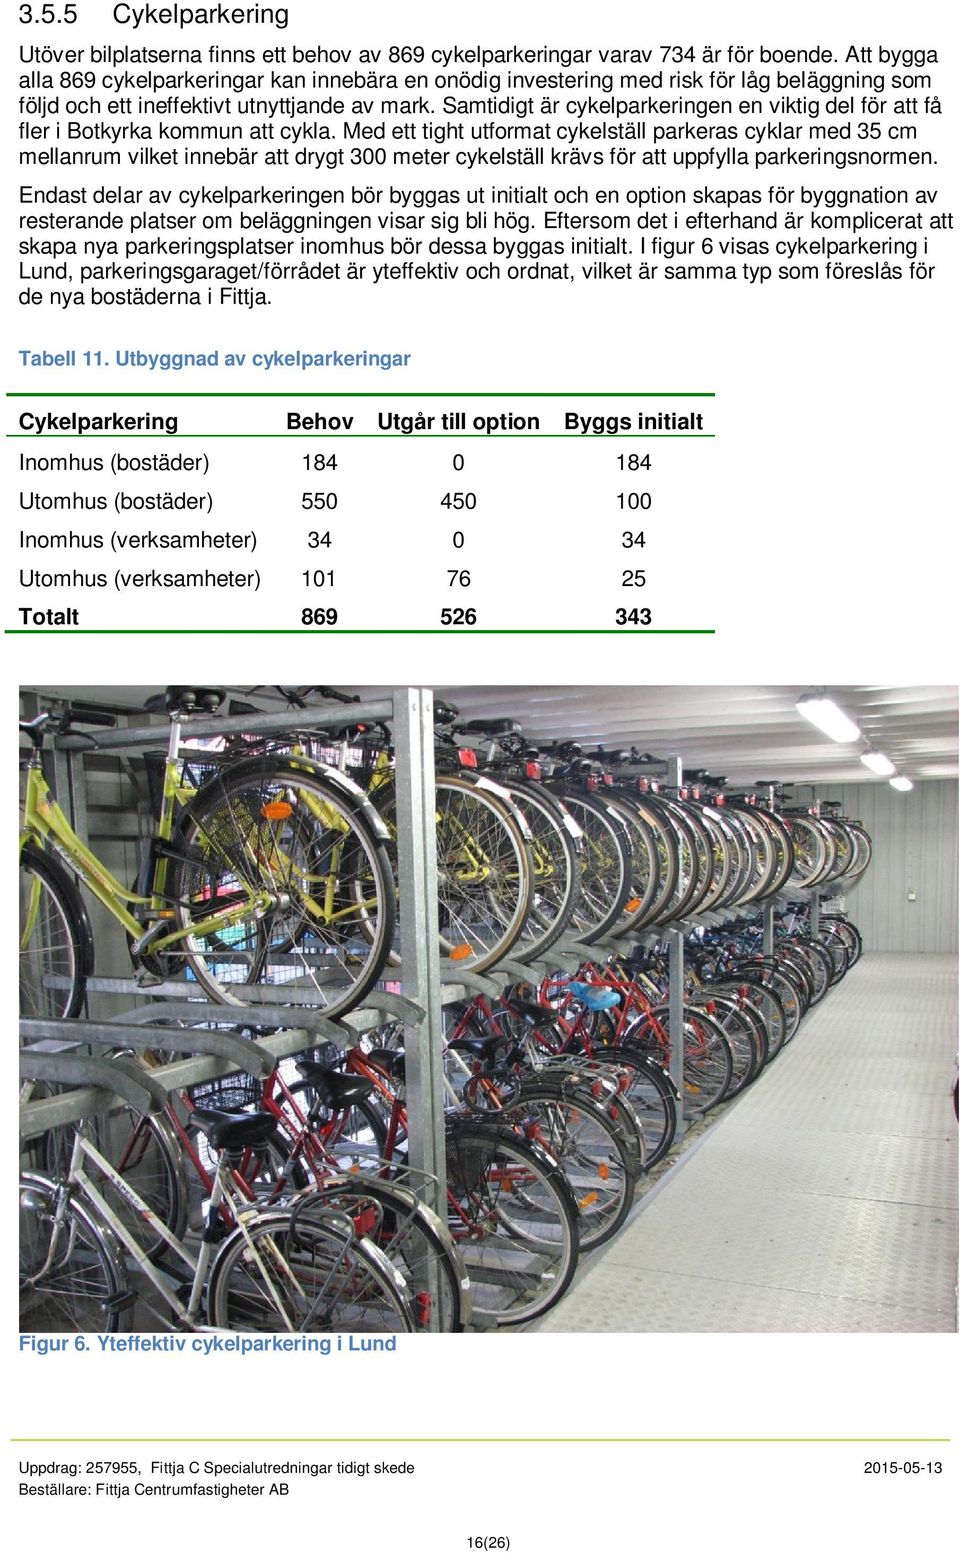 Samtidigt är cykelparkeringen en viktig del för att få fler i Botkyrka kommun att cykla.